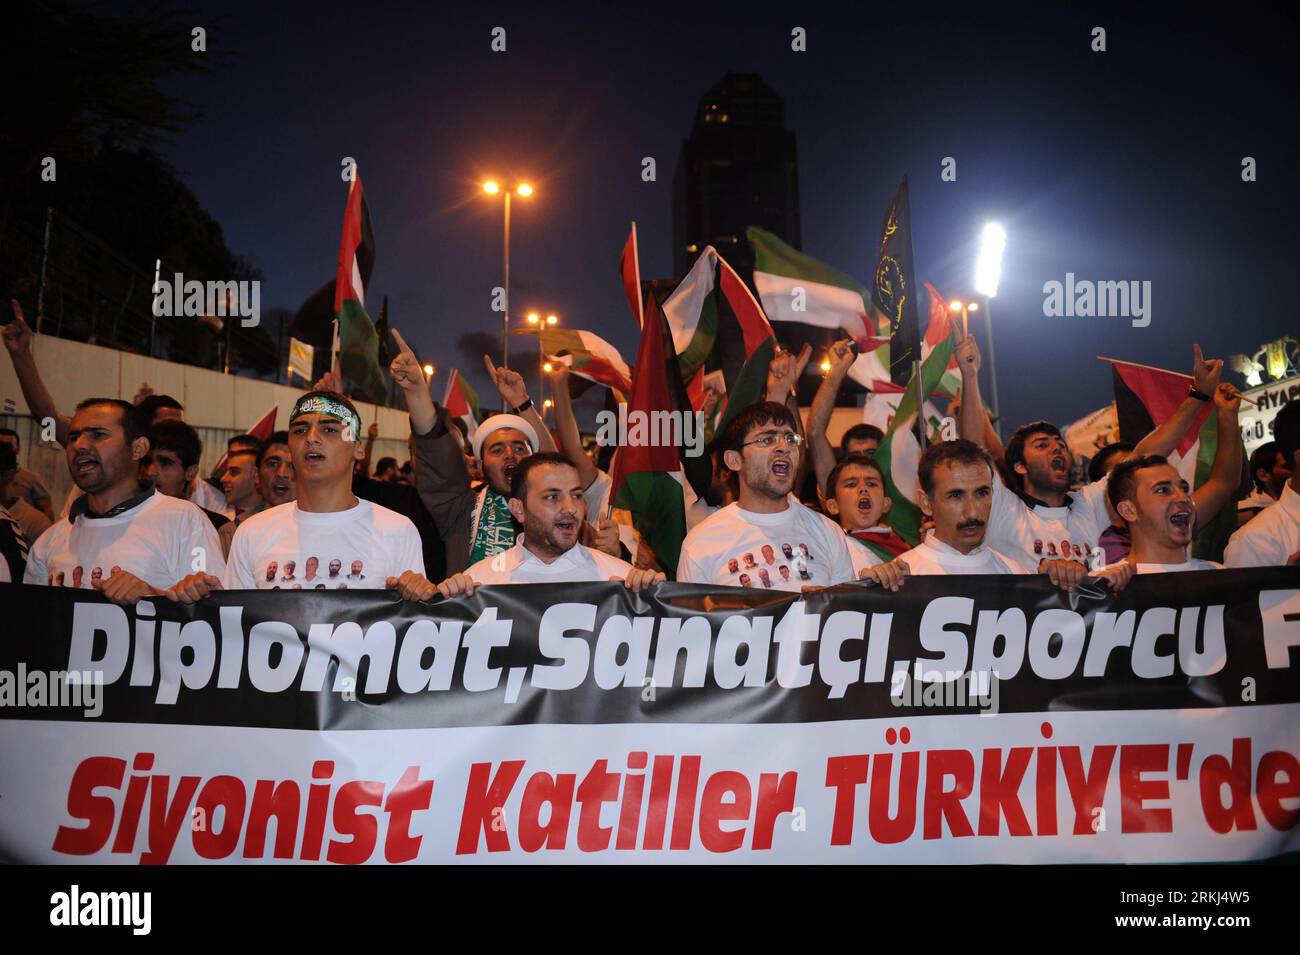 Bildnummer : 55985699 Datum : 15.09.2011 Copyright : imago/Xinhua (110916) -- ISTANBUL, 16 septembre 2011 (Xinhua) -- Participez à une manifestation pour protester contre Israël, à Istanbul, Turquie, le 15 septembre 2011. Plus de 1 000 personnes ont défilé jeudi à Istanbul pour protester contre l'apparition de l'équipe israélienne Maccabi tel Aviv dans la ville pour rivaliser avec Besiktas de Turquie dans l'UEFA Europa League. (Xinhua/Ma Yan) (axy) TURQUIE-ISTANBUL-ISRAËL-PROTEST PUBLICATIONxNOTxINxCHN Gesellschaft Politik Nahostkonflikt Demo Protest Premiumd xns x0x 2011 quer 55985699 Date 15 09 2011 Copyright Imag Banque D'Images